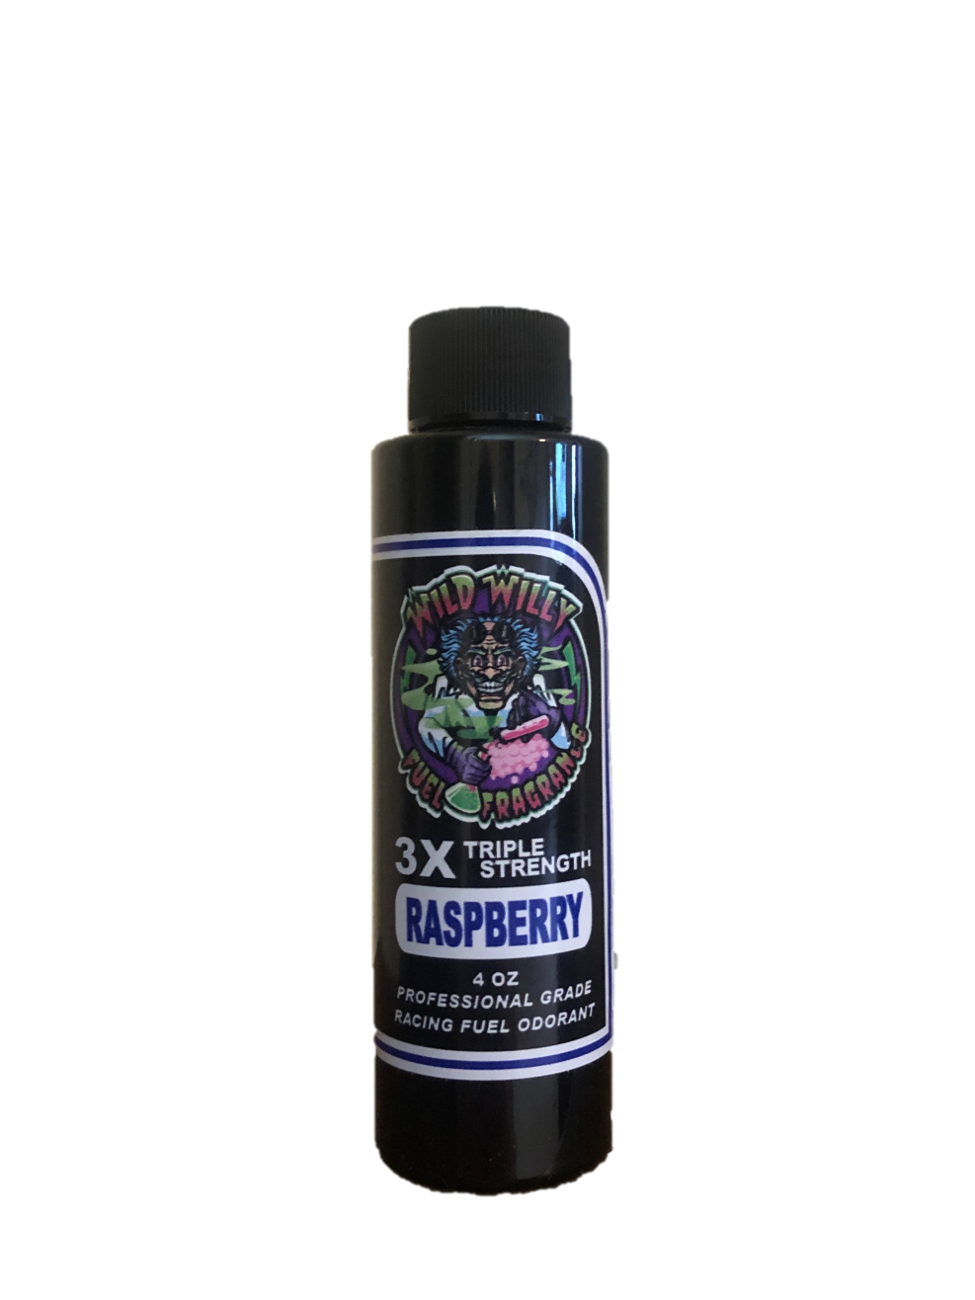 Raspberry - Wild Willy Fuel Fragrance - 3X Triple Strength!